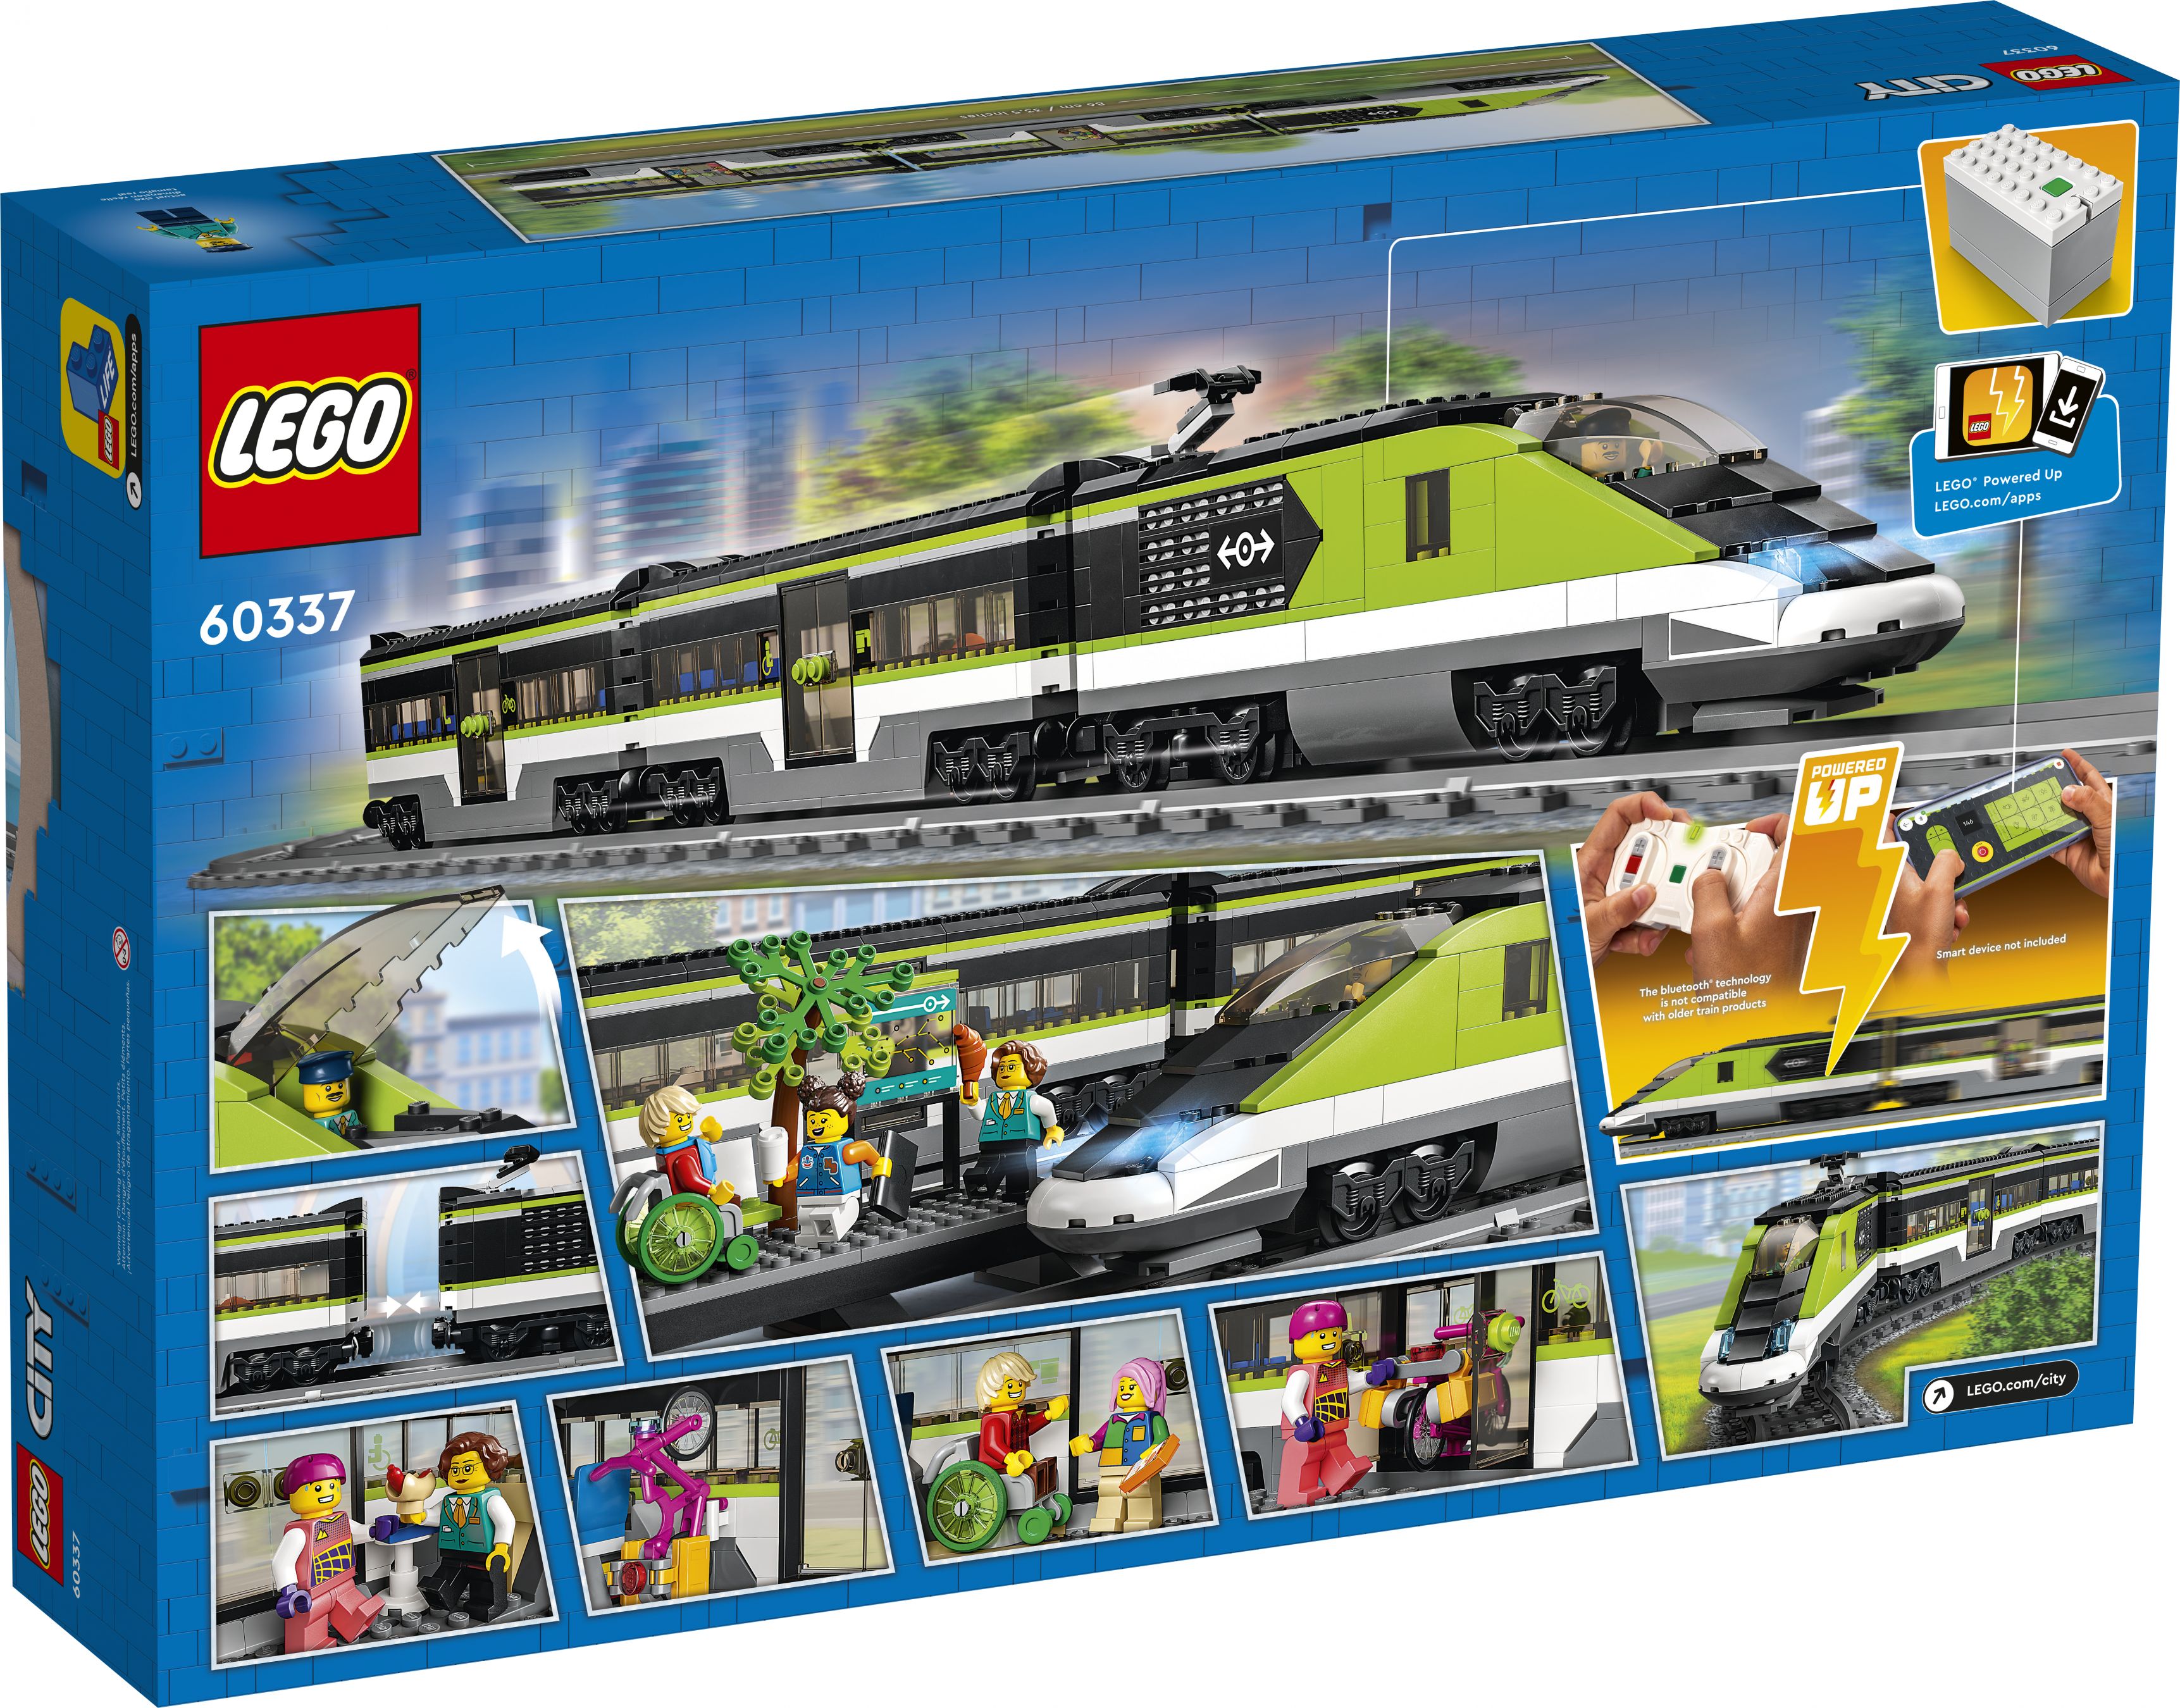 LEGO City 60337 Personen-Schnellzug LEGO_60337_Box5_v39.jpg